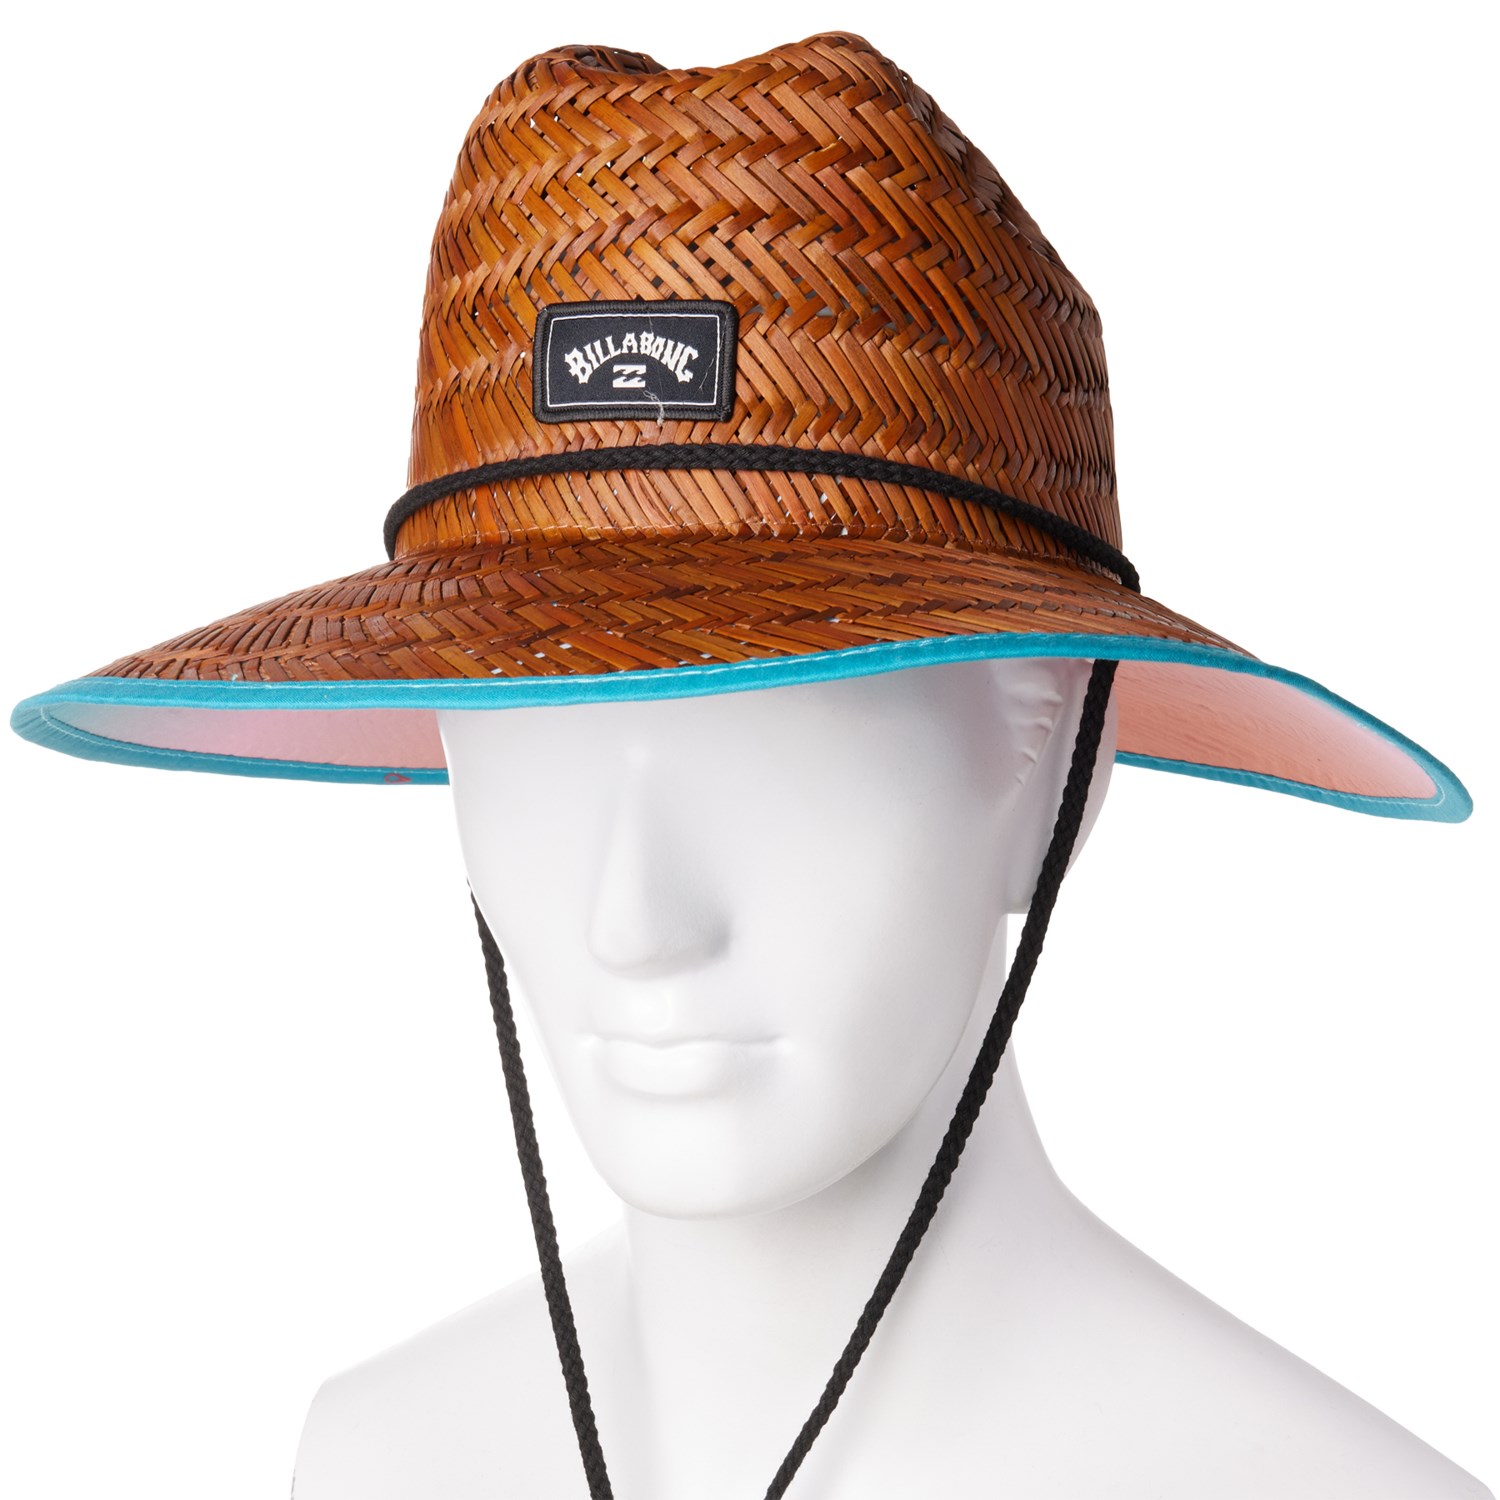 Billabong Tides Print Straw Hat (For Men) - Save 44%